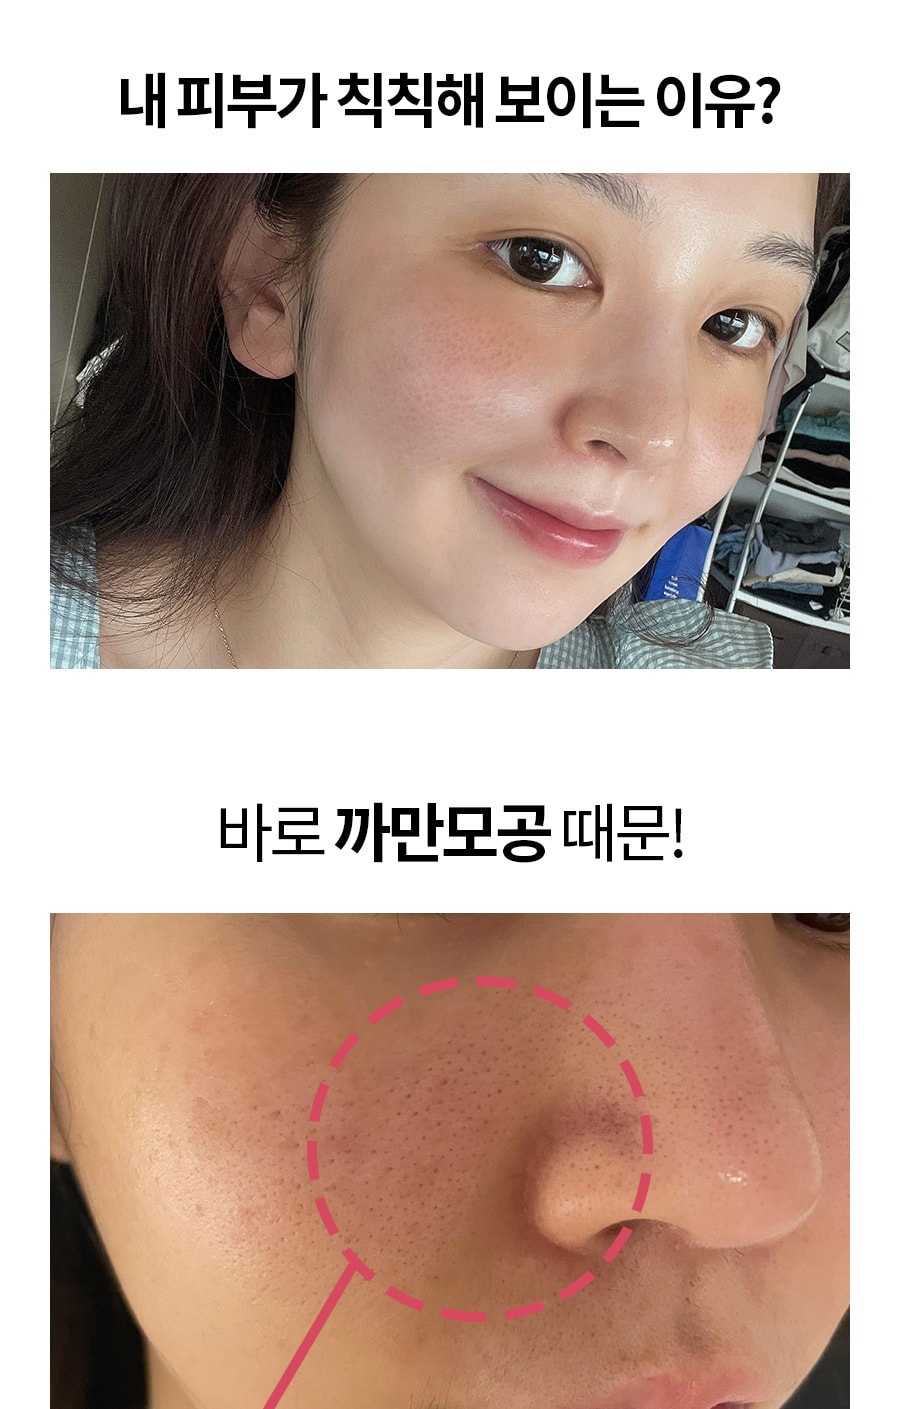 【韓國 Milk Touch】西洋李子維生素膠囊潔面泡沫 300ML